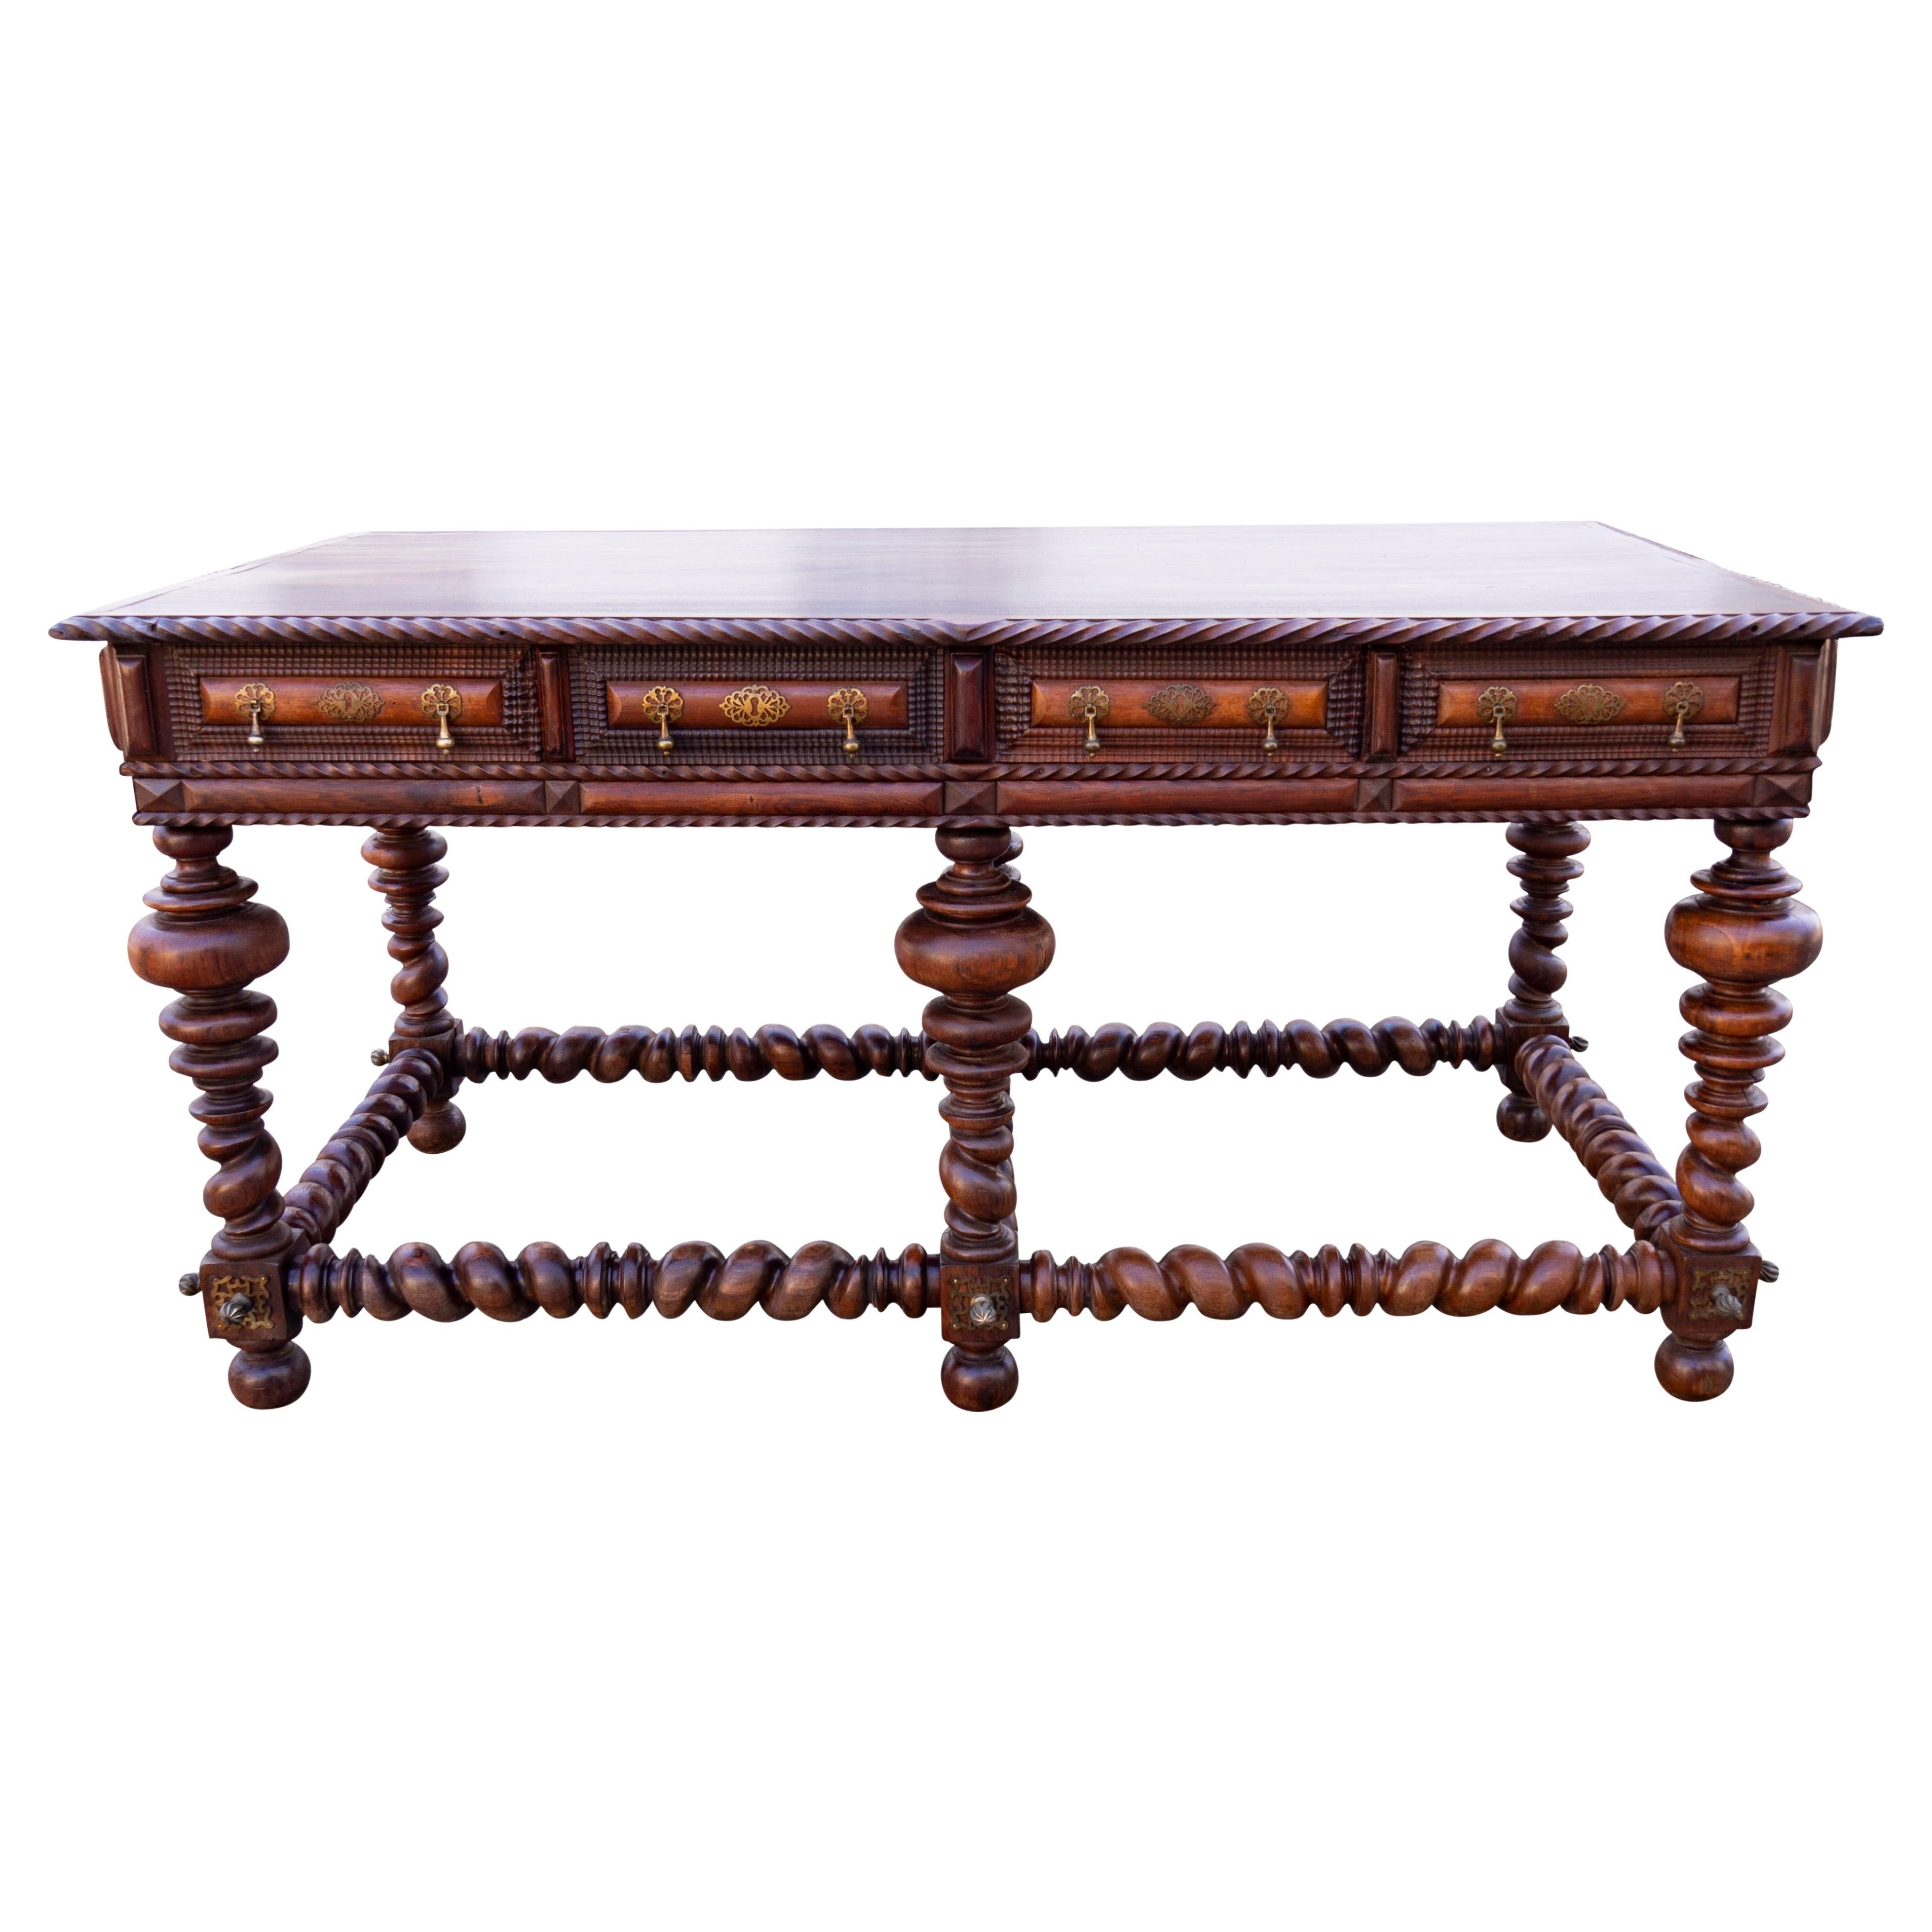 Table centrale coloniale portugaise/brésilienne en bois de rose